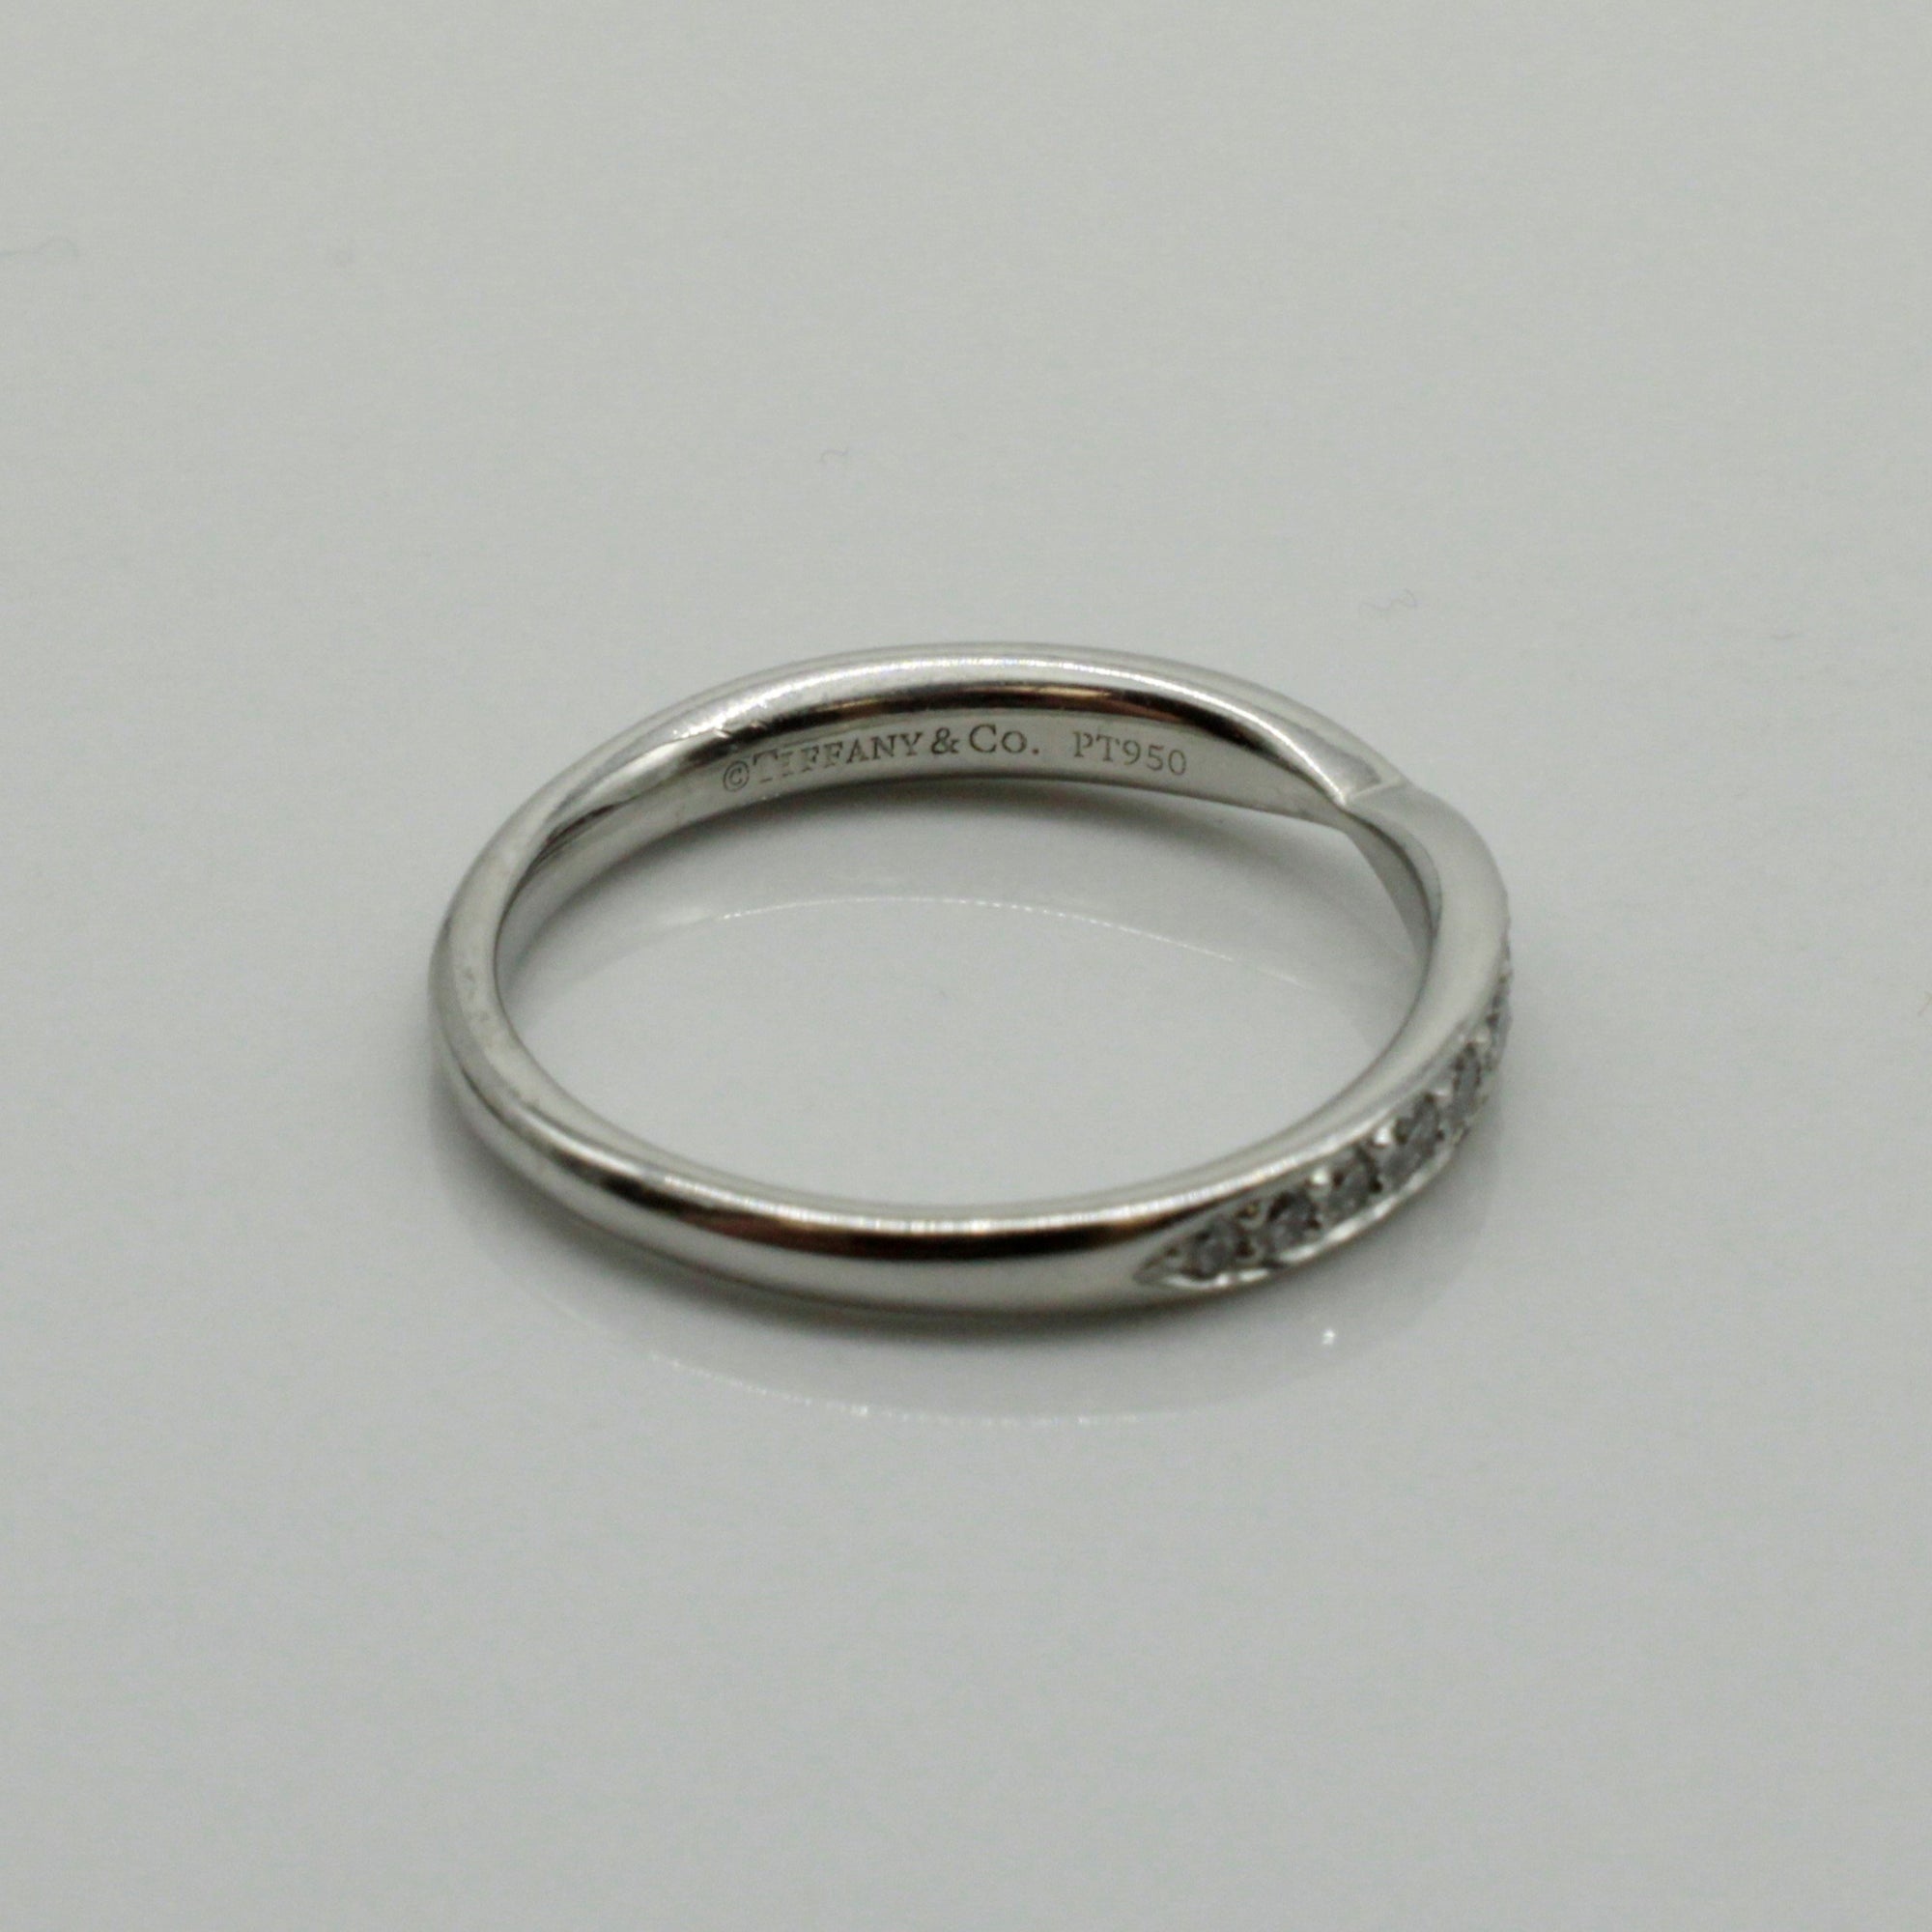 'Tiffany & Co.' Harmony Bead Set Diamond Ring | 0.23ctw | SZ 4.25 |